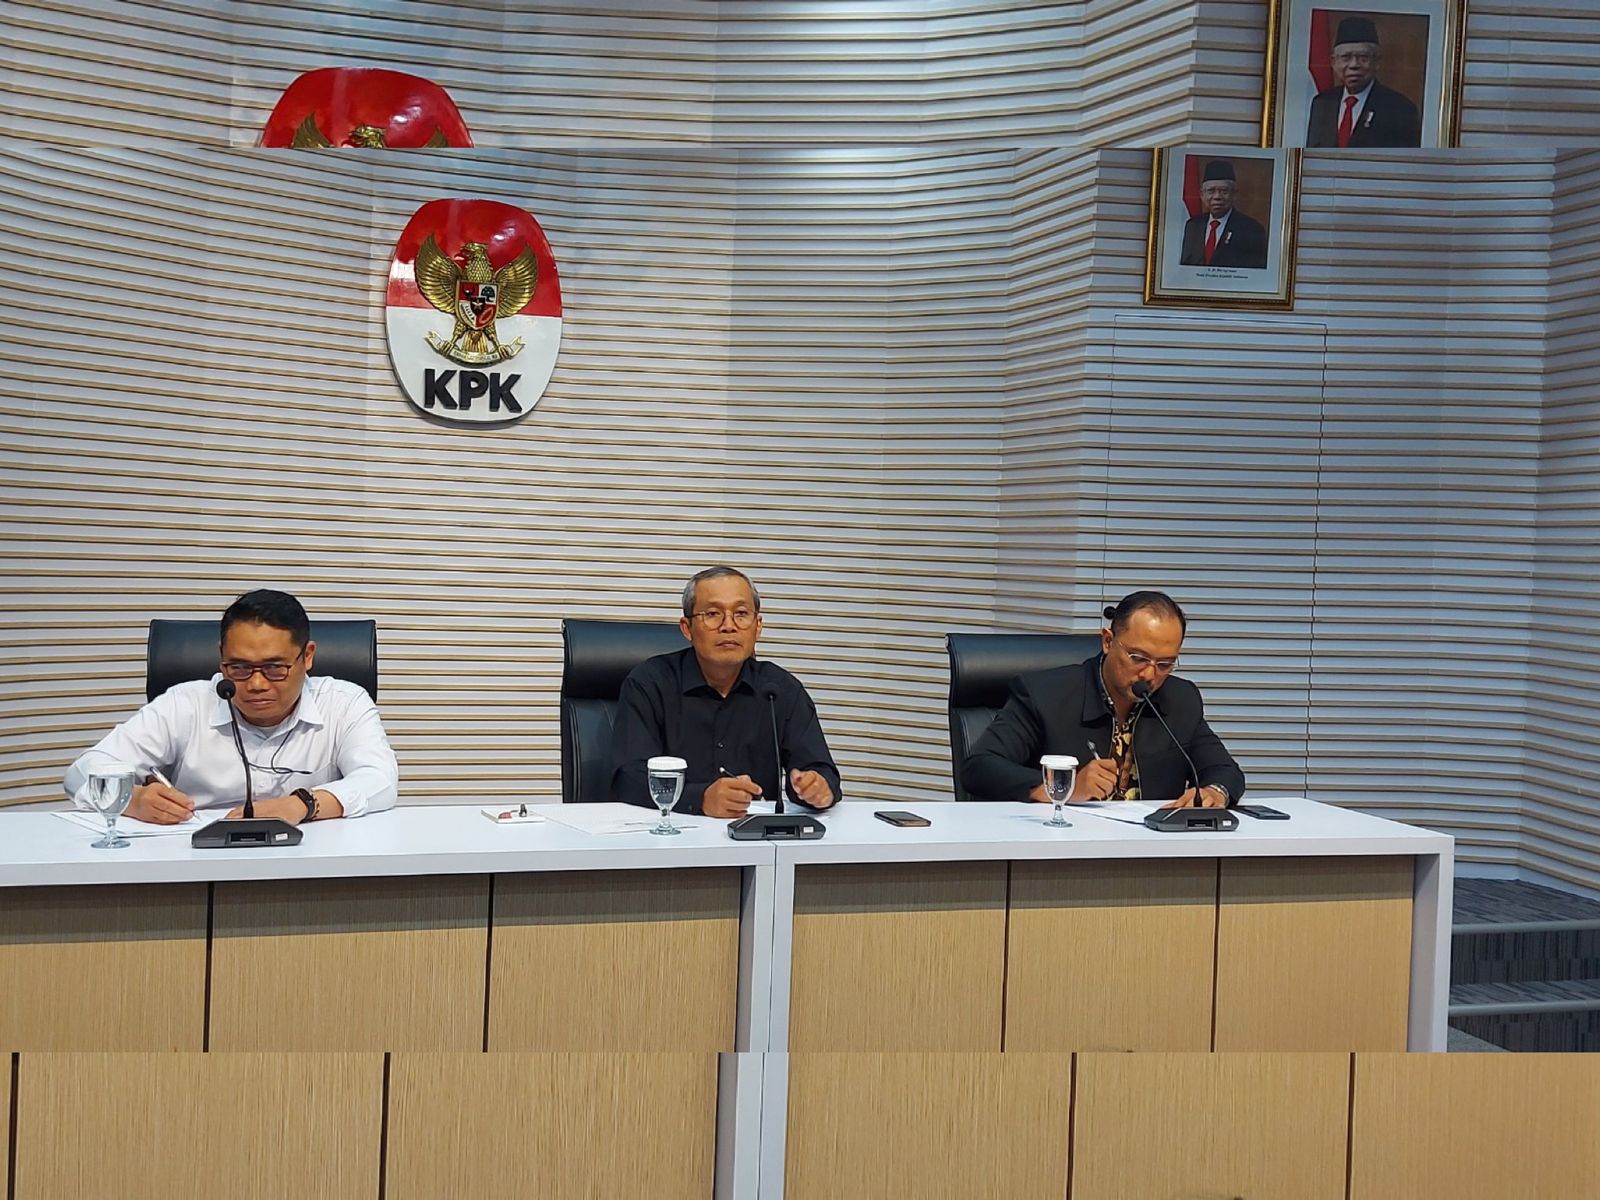 17 Pegawai KPK Terlibat Judi Online dengan Transaksi hingga Rp111 Juta, Aexander Marwata: Iseng-iseng Aja